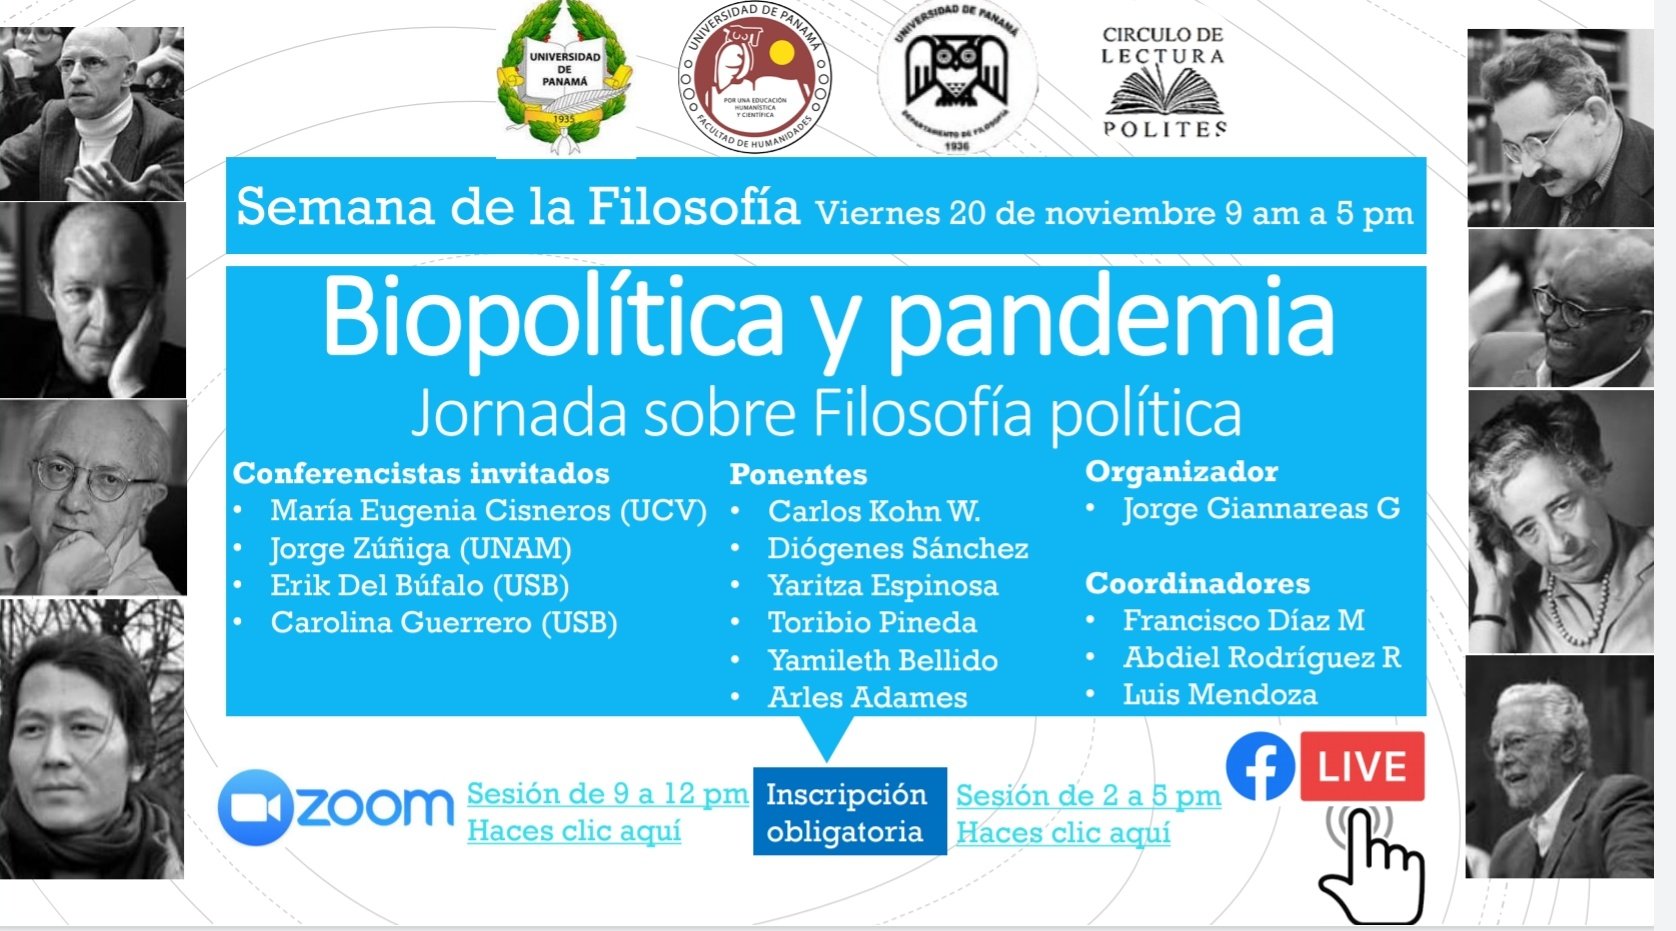 Jornada de Filosofía Política Biopolítica y pandemia será el 20 de noviembre